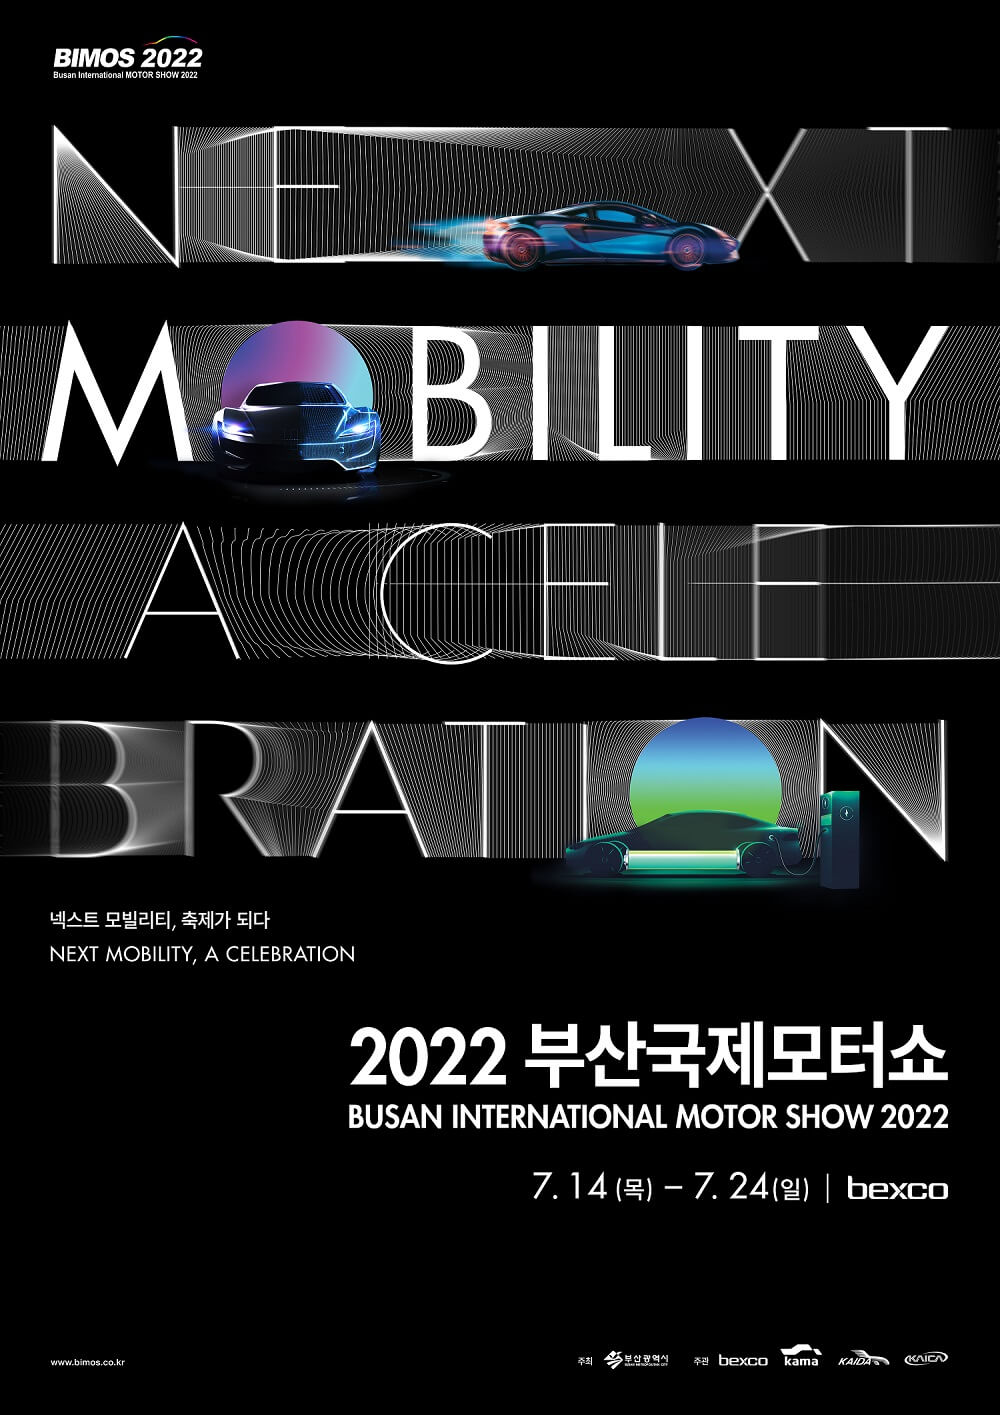 2022 부산국제모터쇼(BIMOS 2022)